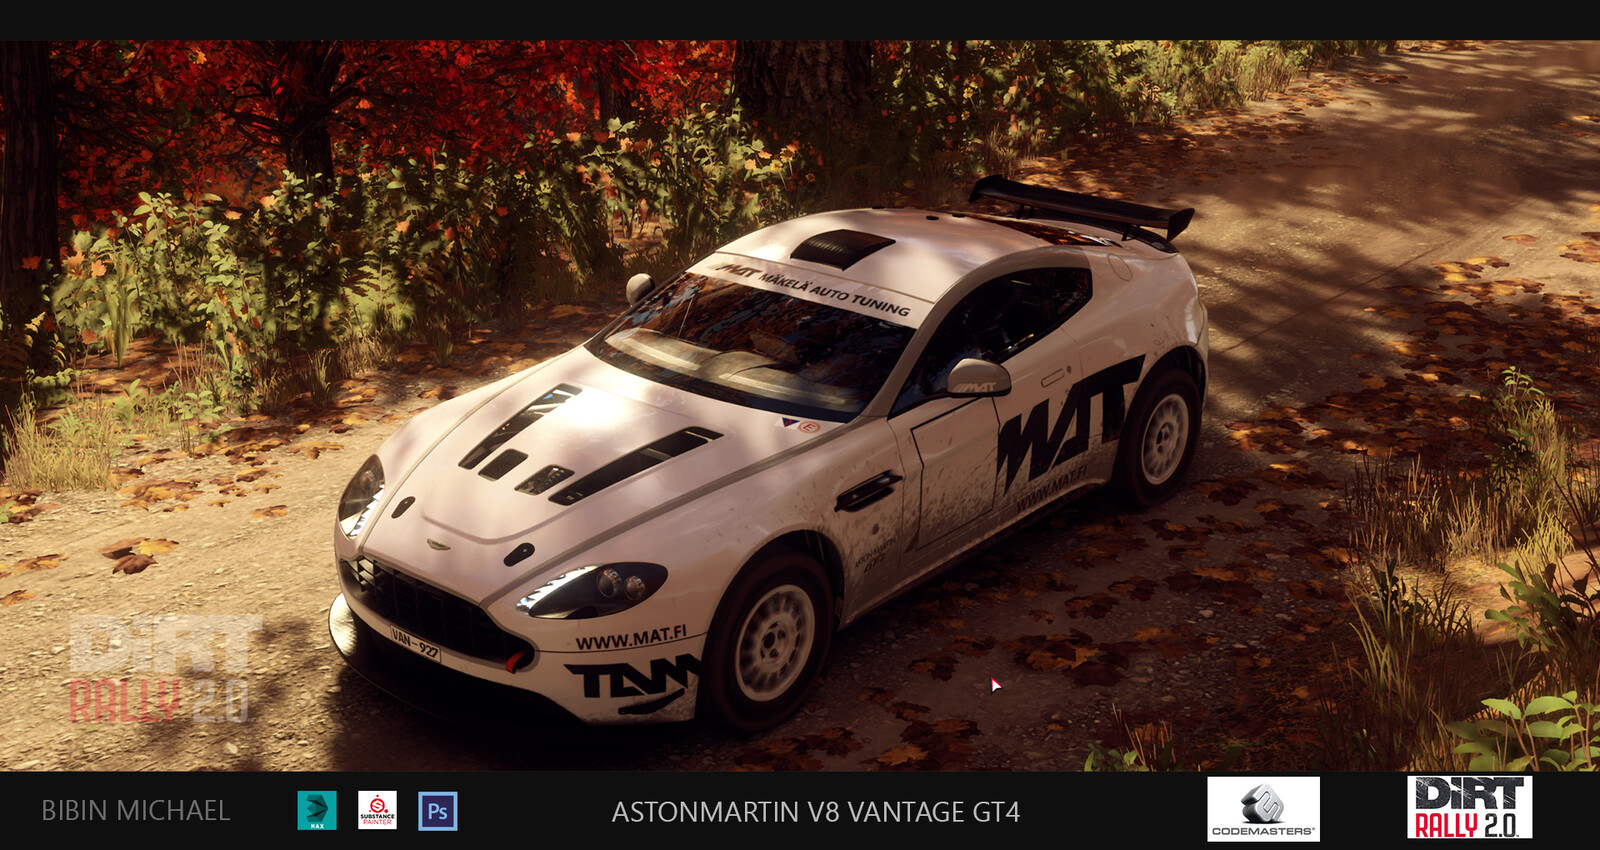 Vantage GT4